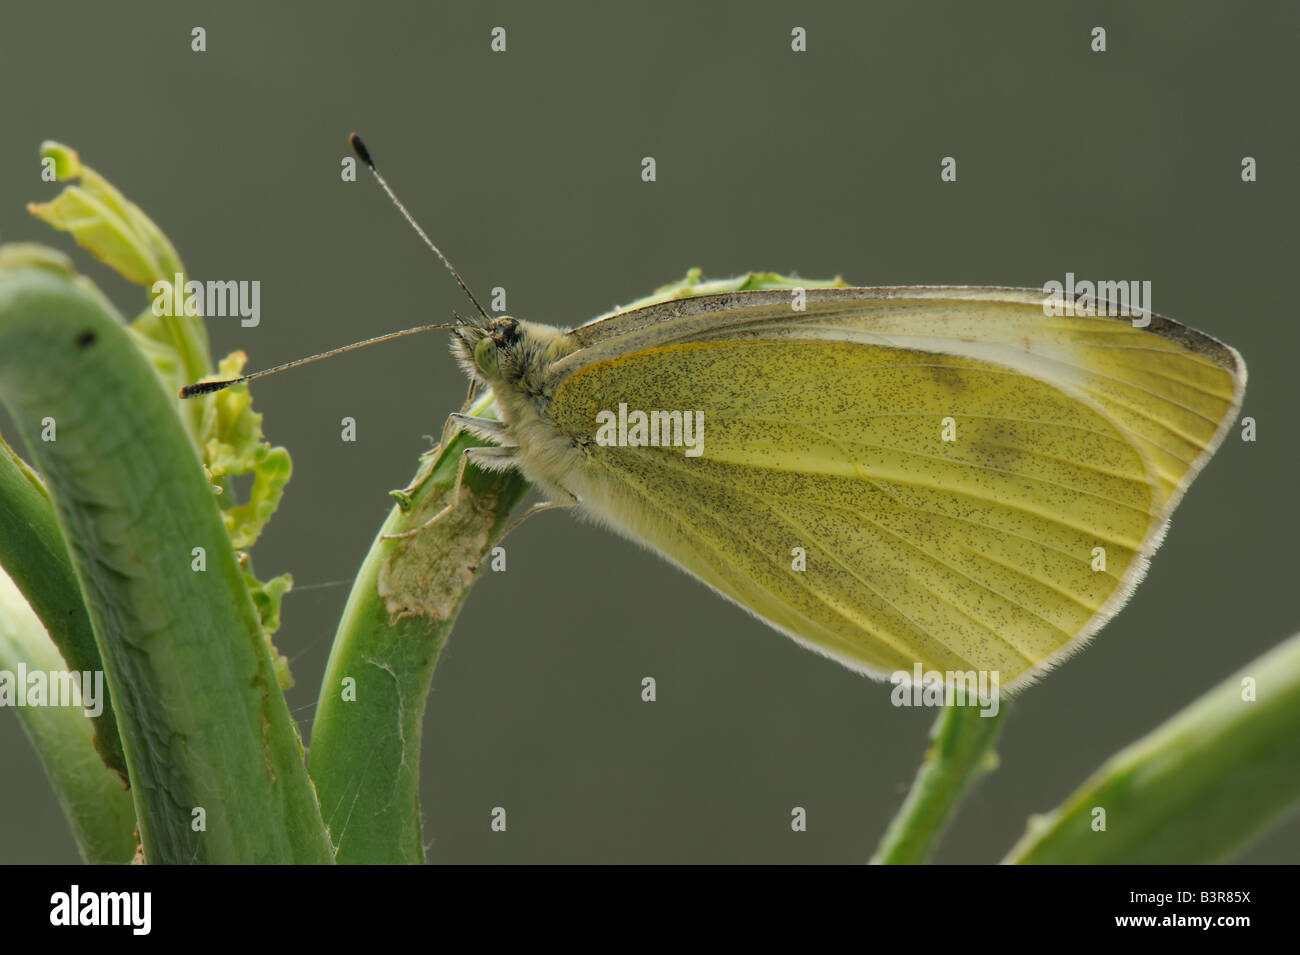 Adultes nouvellement éclos grand papillon blanc Pieris brassicae avec ailes repliées au repos Banque D'Images